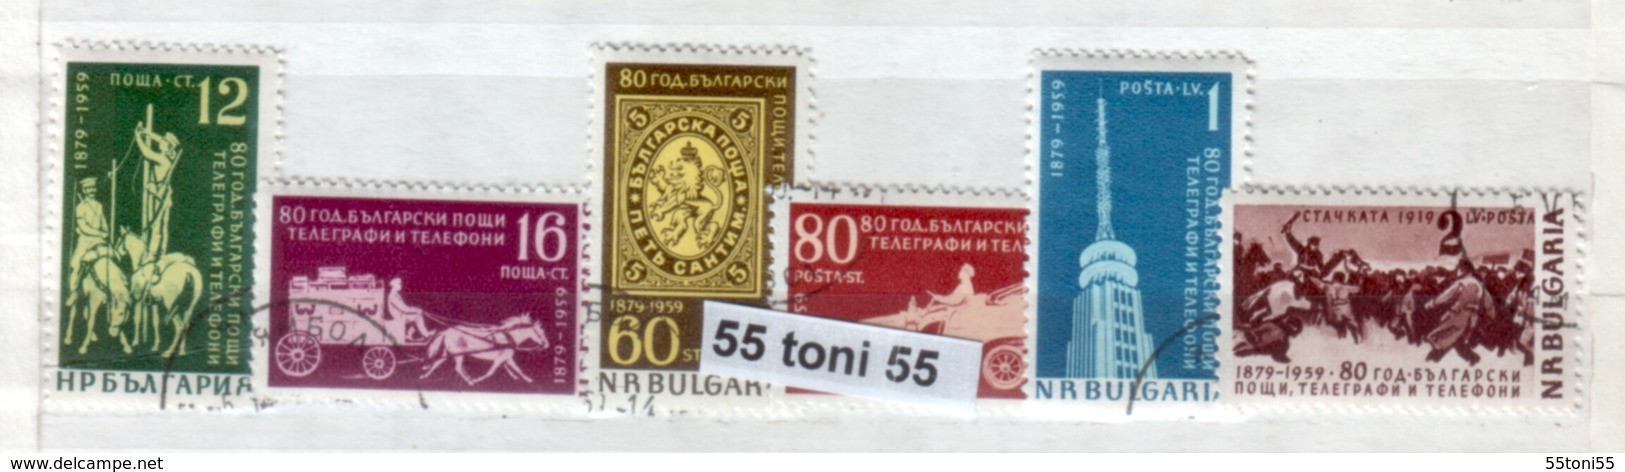 1959 80 Anniversaire De La Poste ( Chevaux - Cavalli) 6v. - Oblitere/used (O)Bulgarien / Bulgaria - Used Stamps